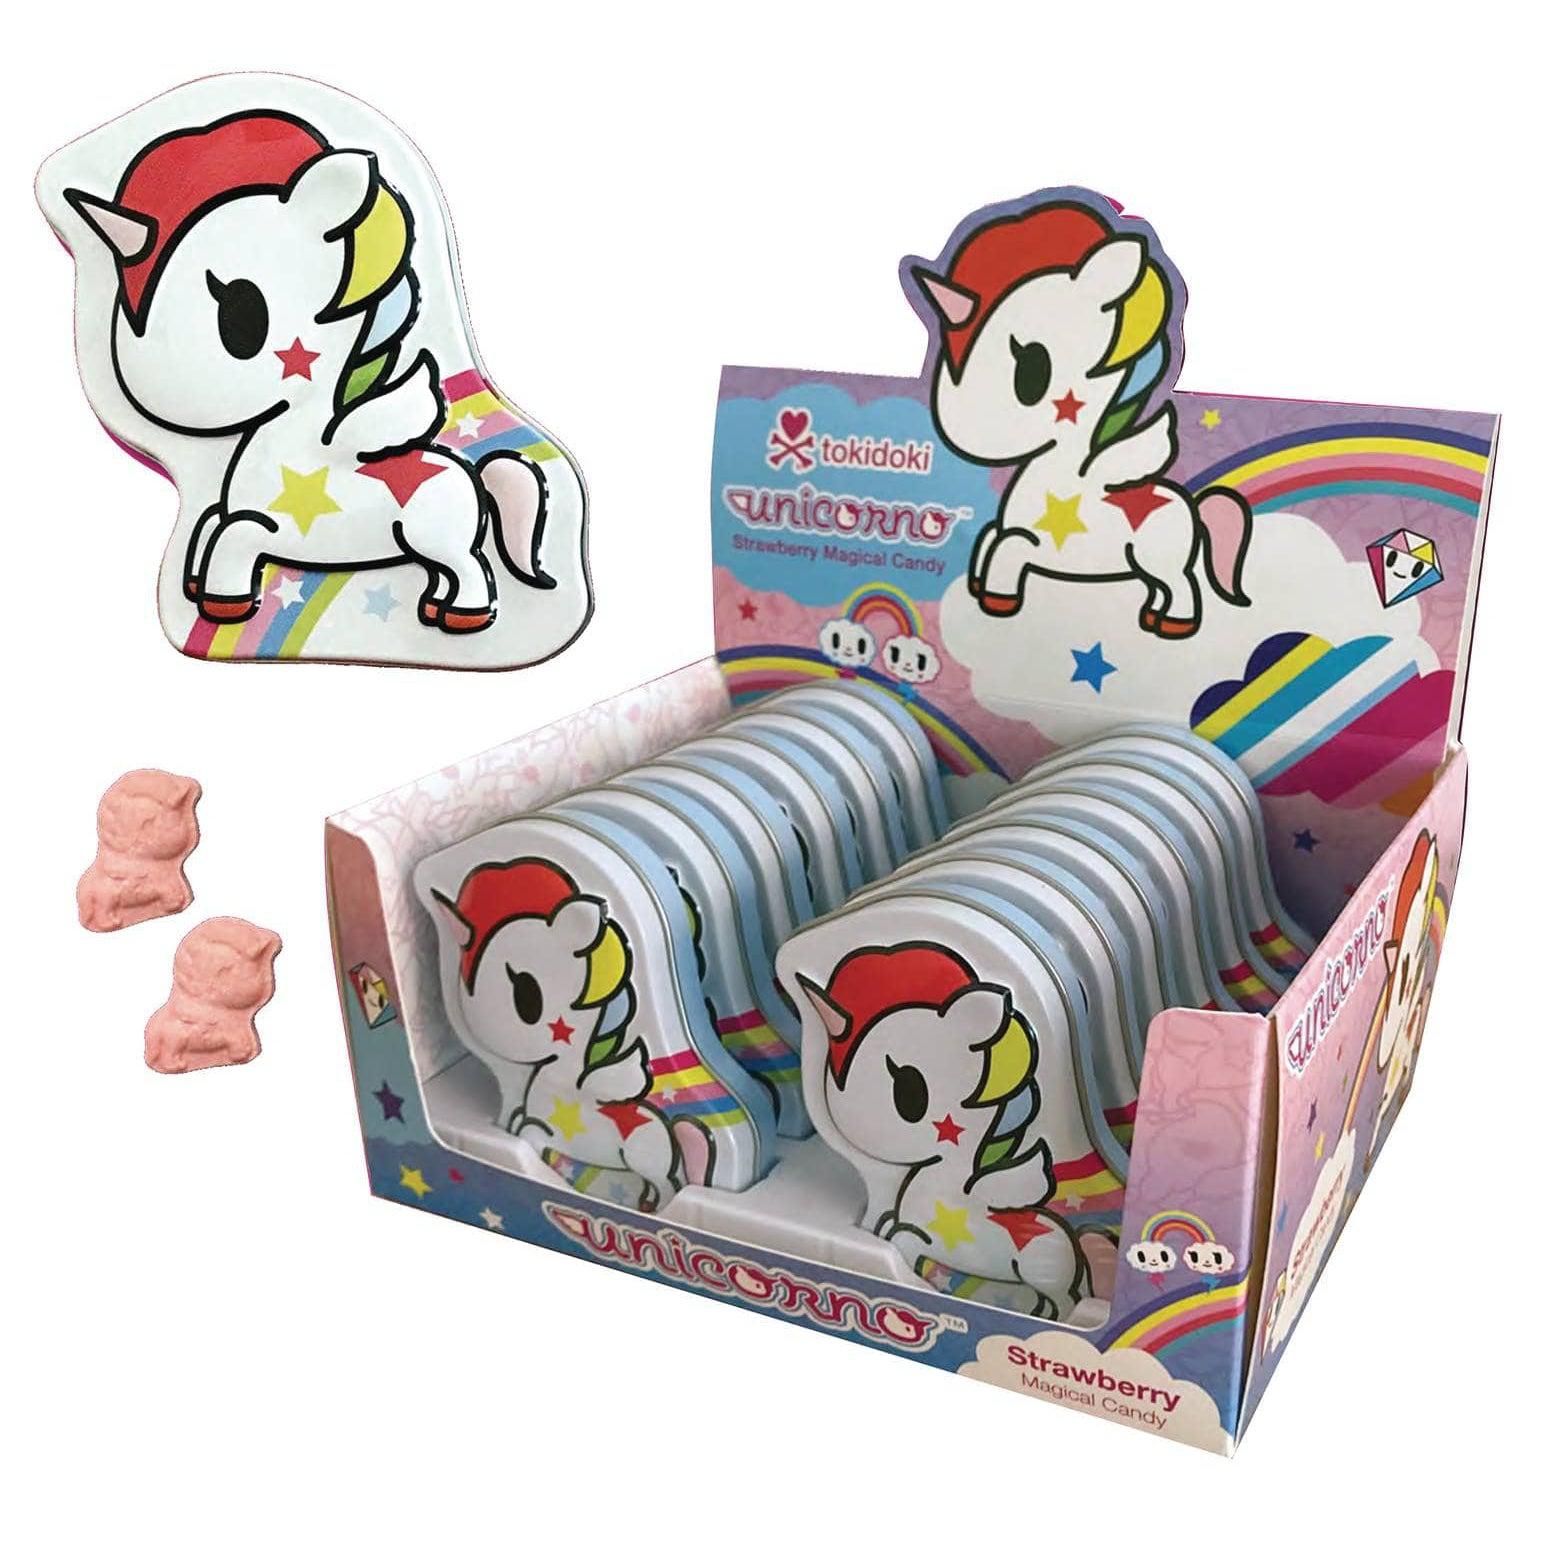 Boston America-Tokidoki Unicorno Strawberry Candy-17587-Box of 12-Legacy Toys